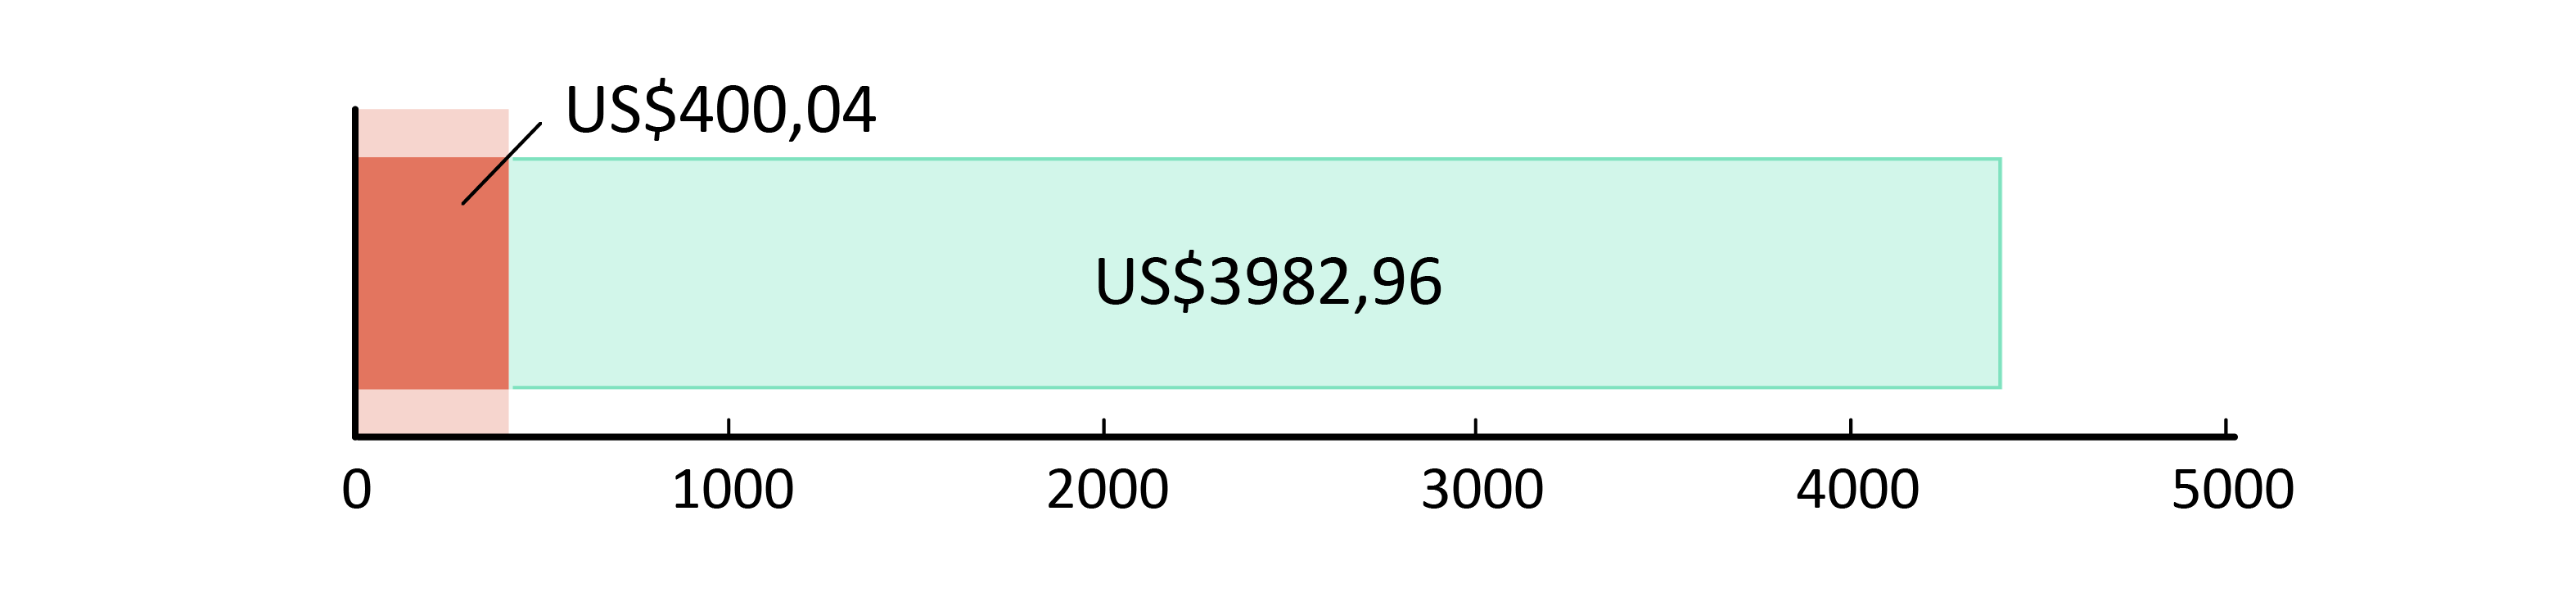 US$400.04 cheltuiți; US$3982.96 rămași